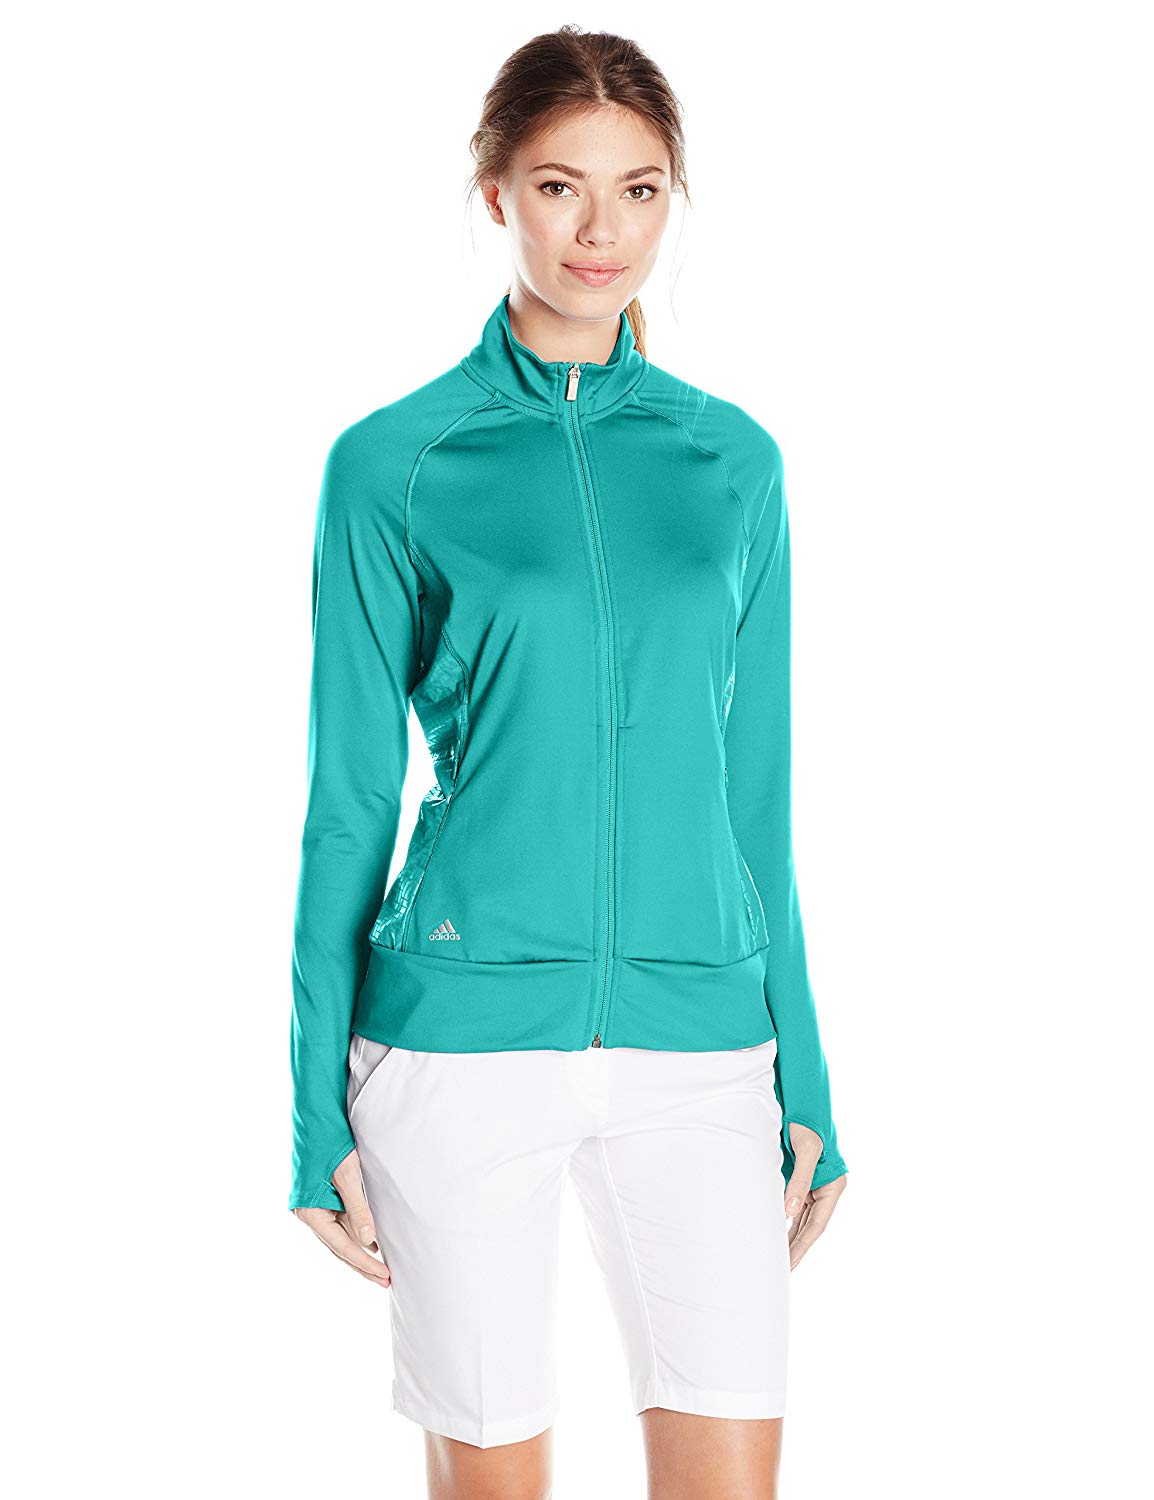 Womens Adidas Ranger Full Zip Golf Jackets